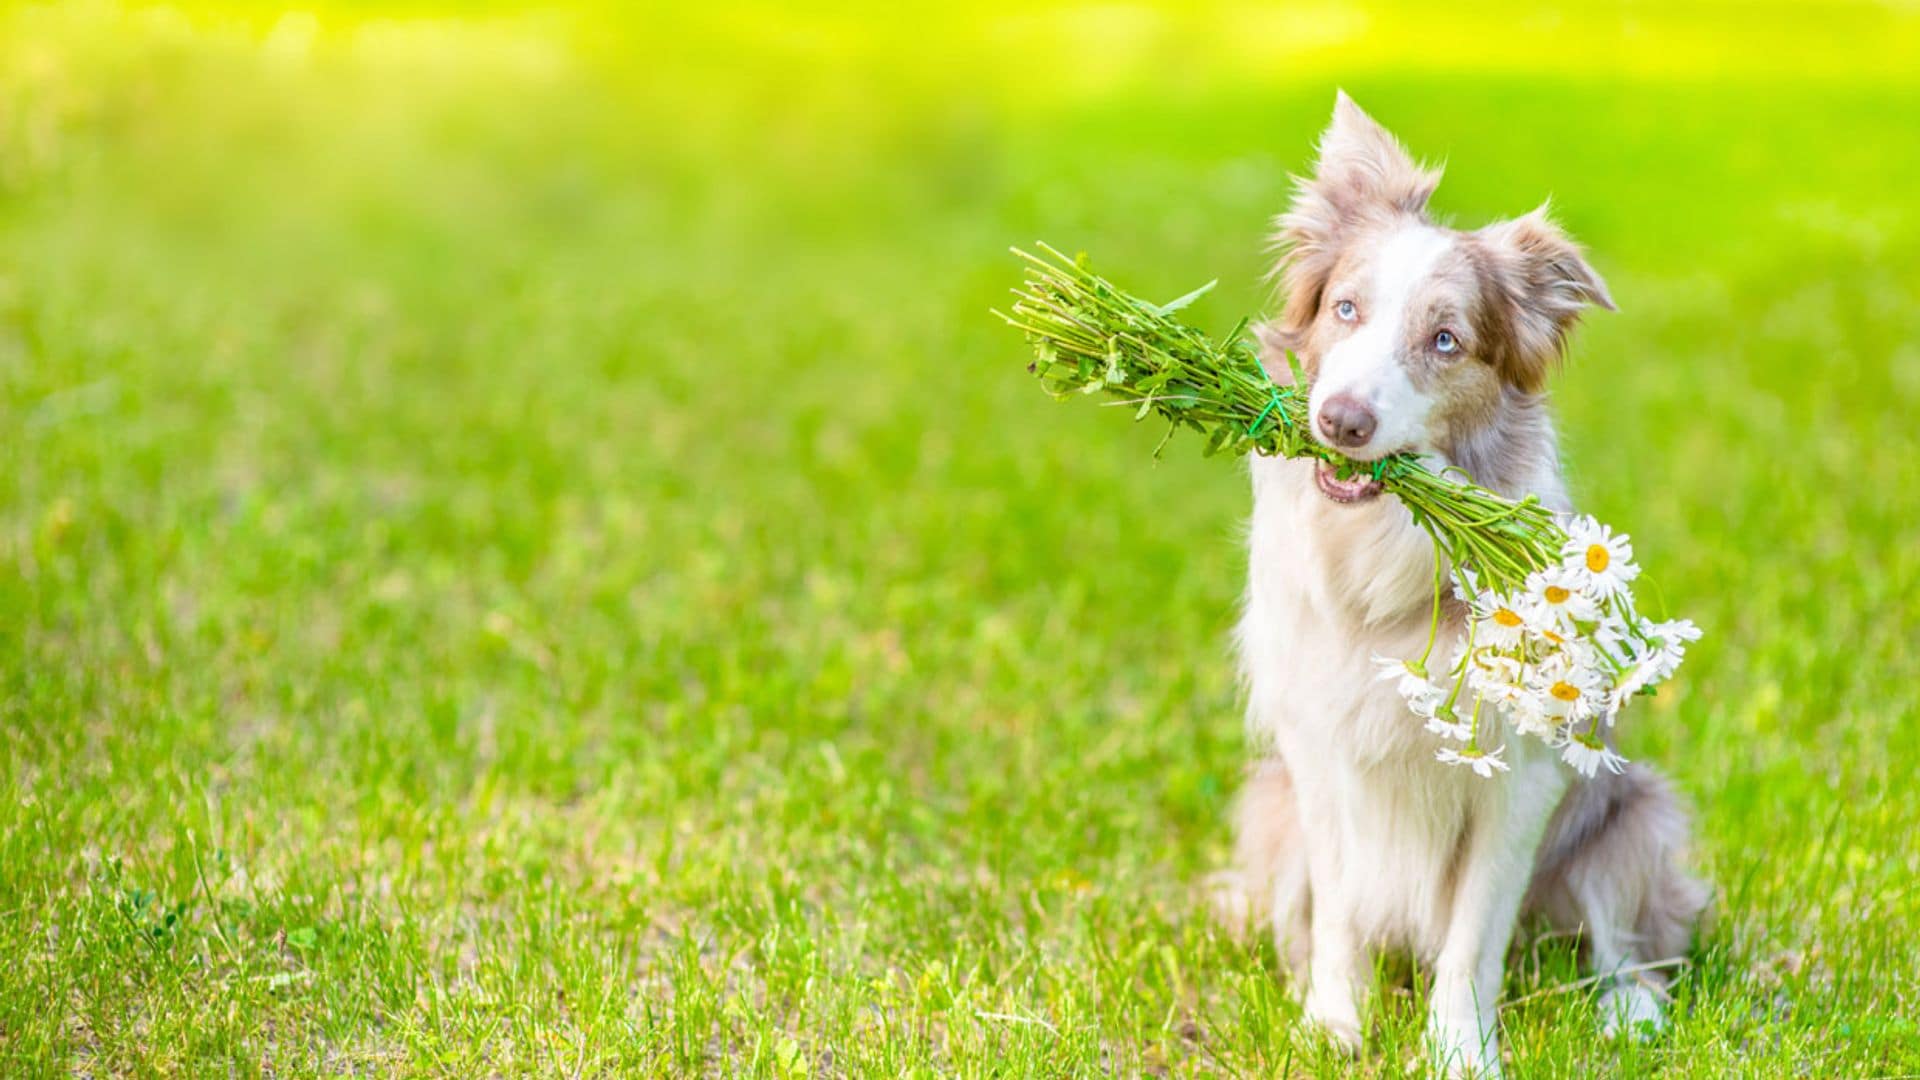 Plantas medicinales y remedios que pueden ayudar a nuestras mascotas